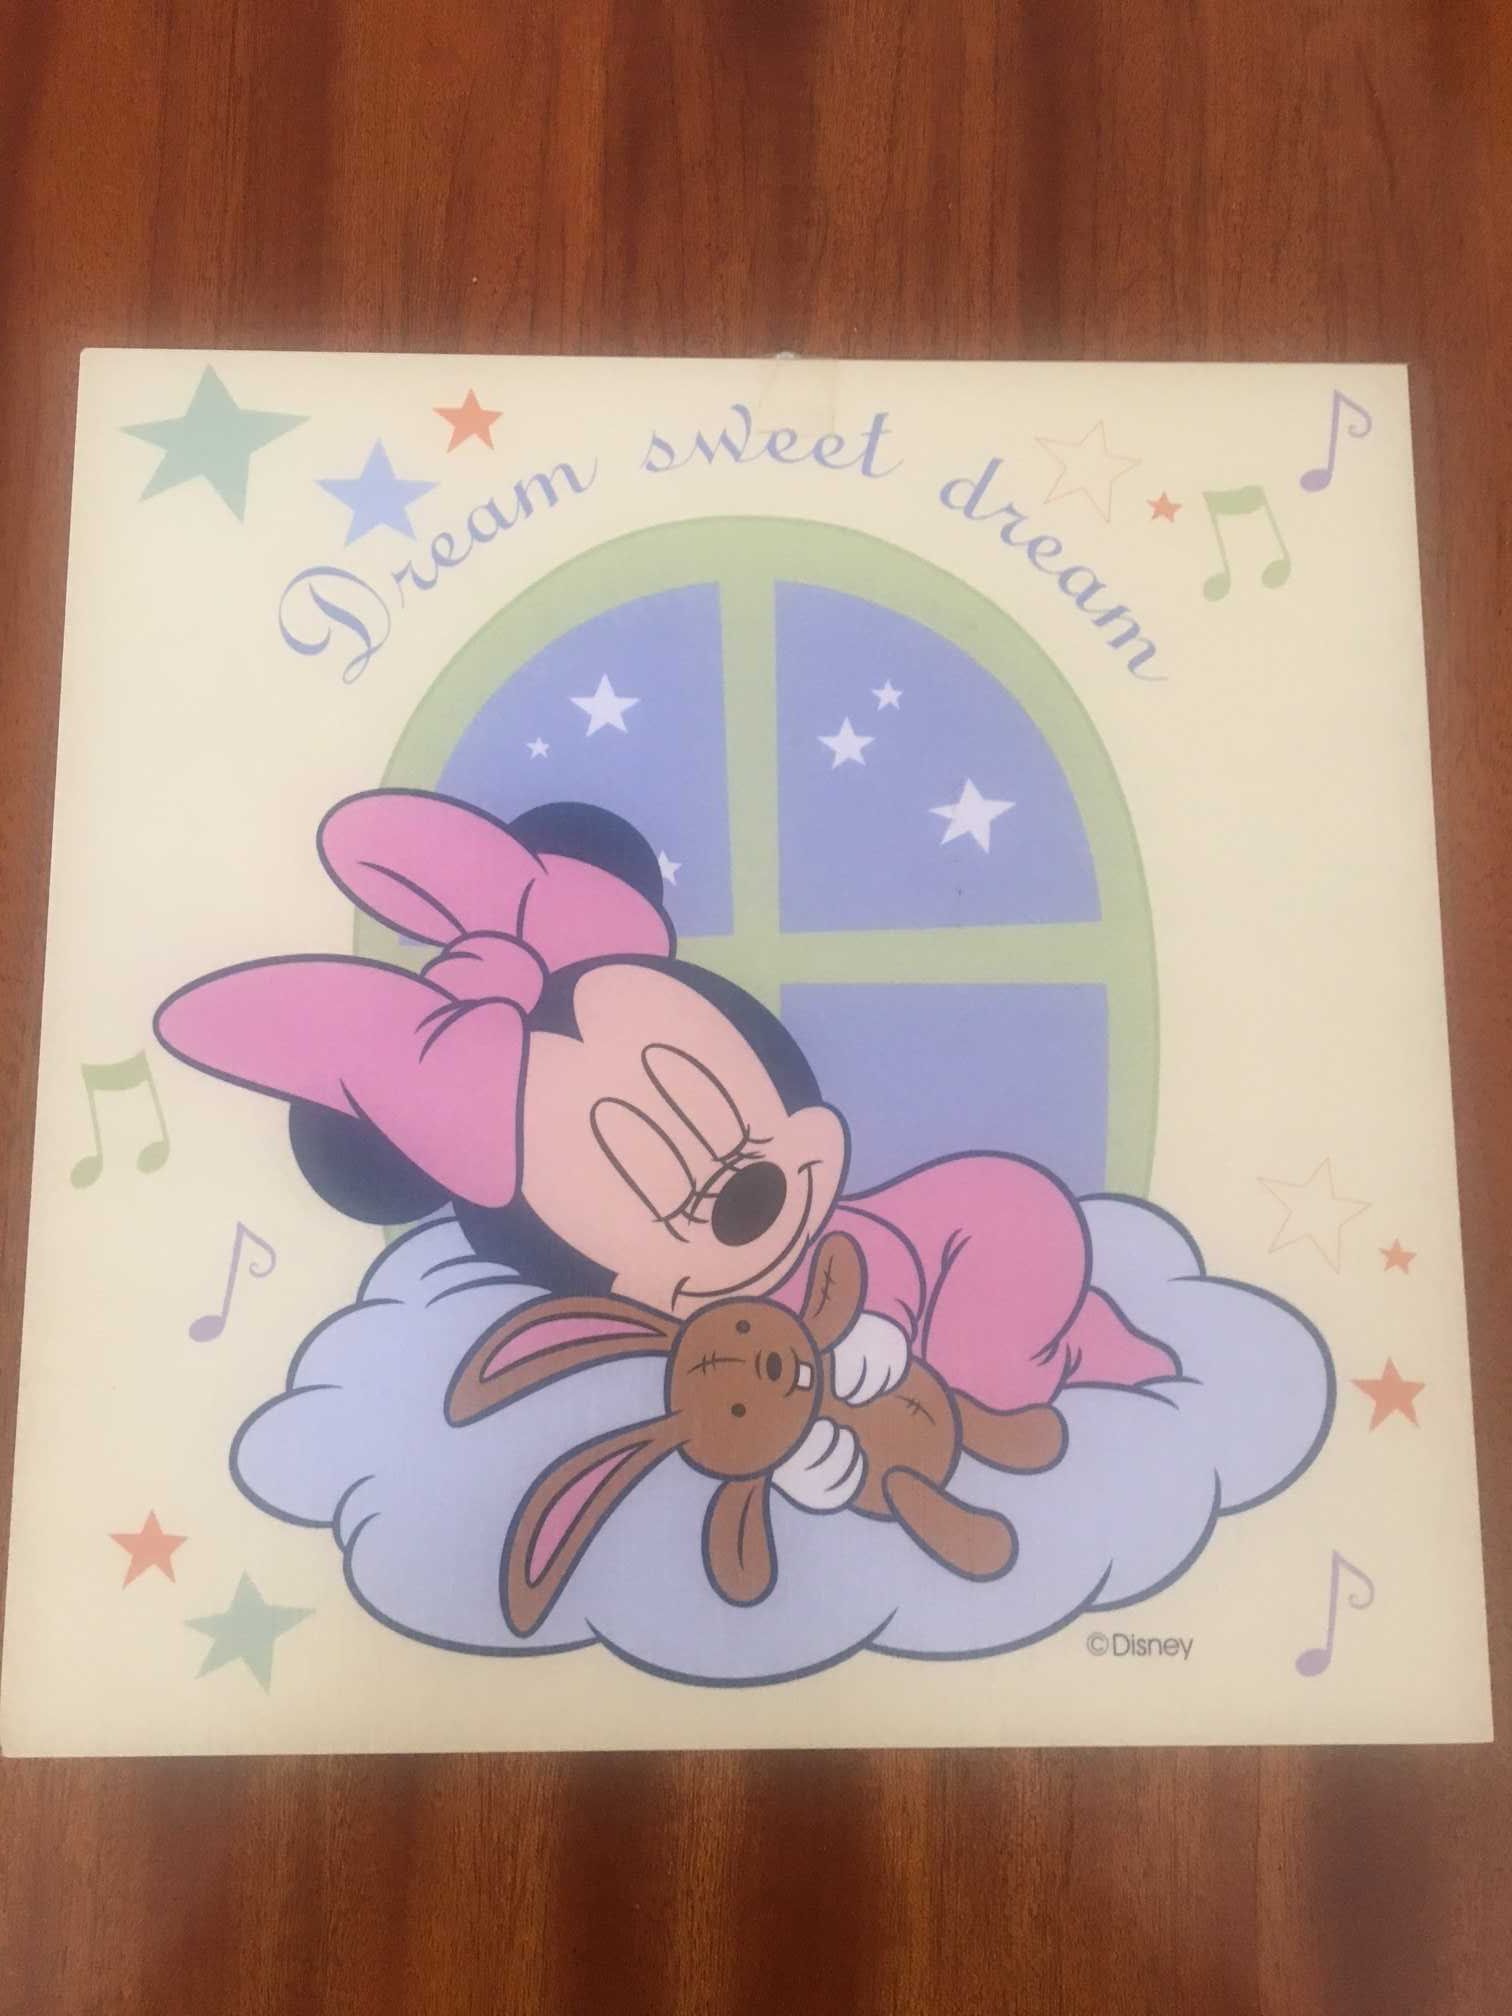 Lote 2 quadros decorativos da Disney (Minnie)  30x30 cm (novos)